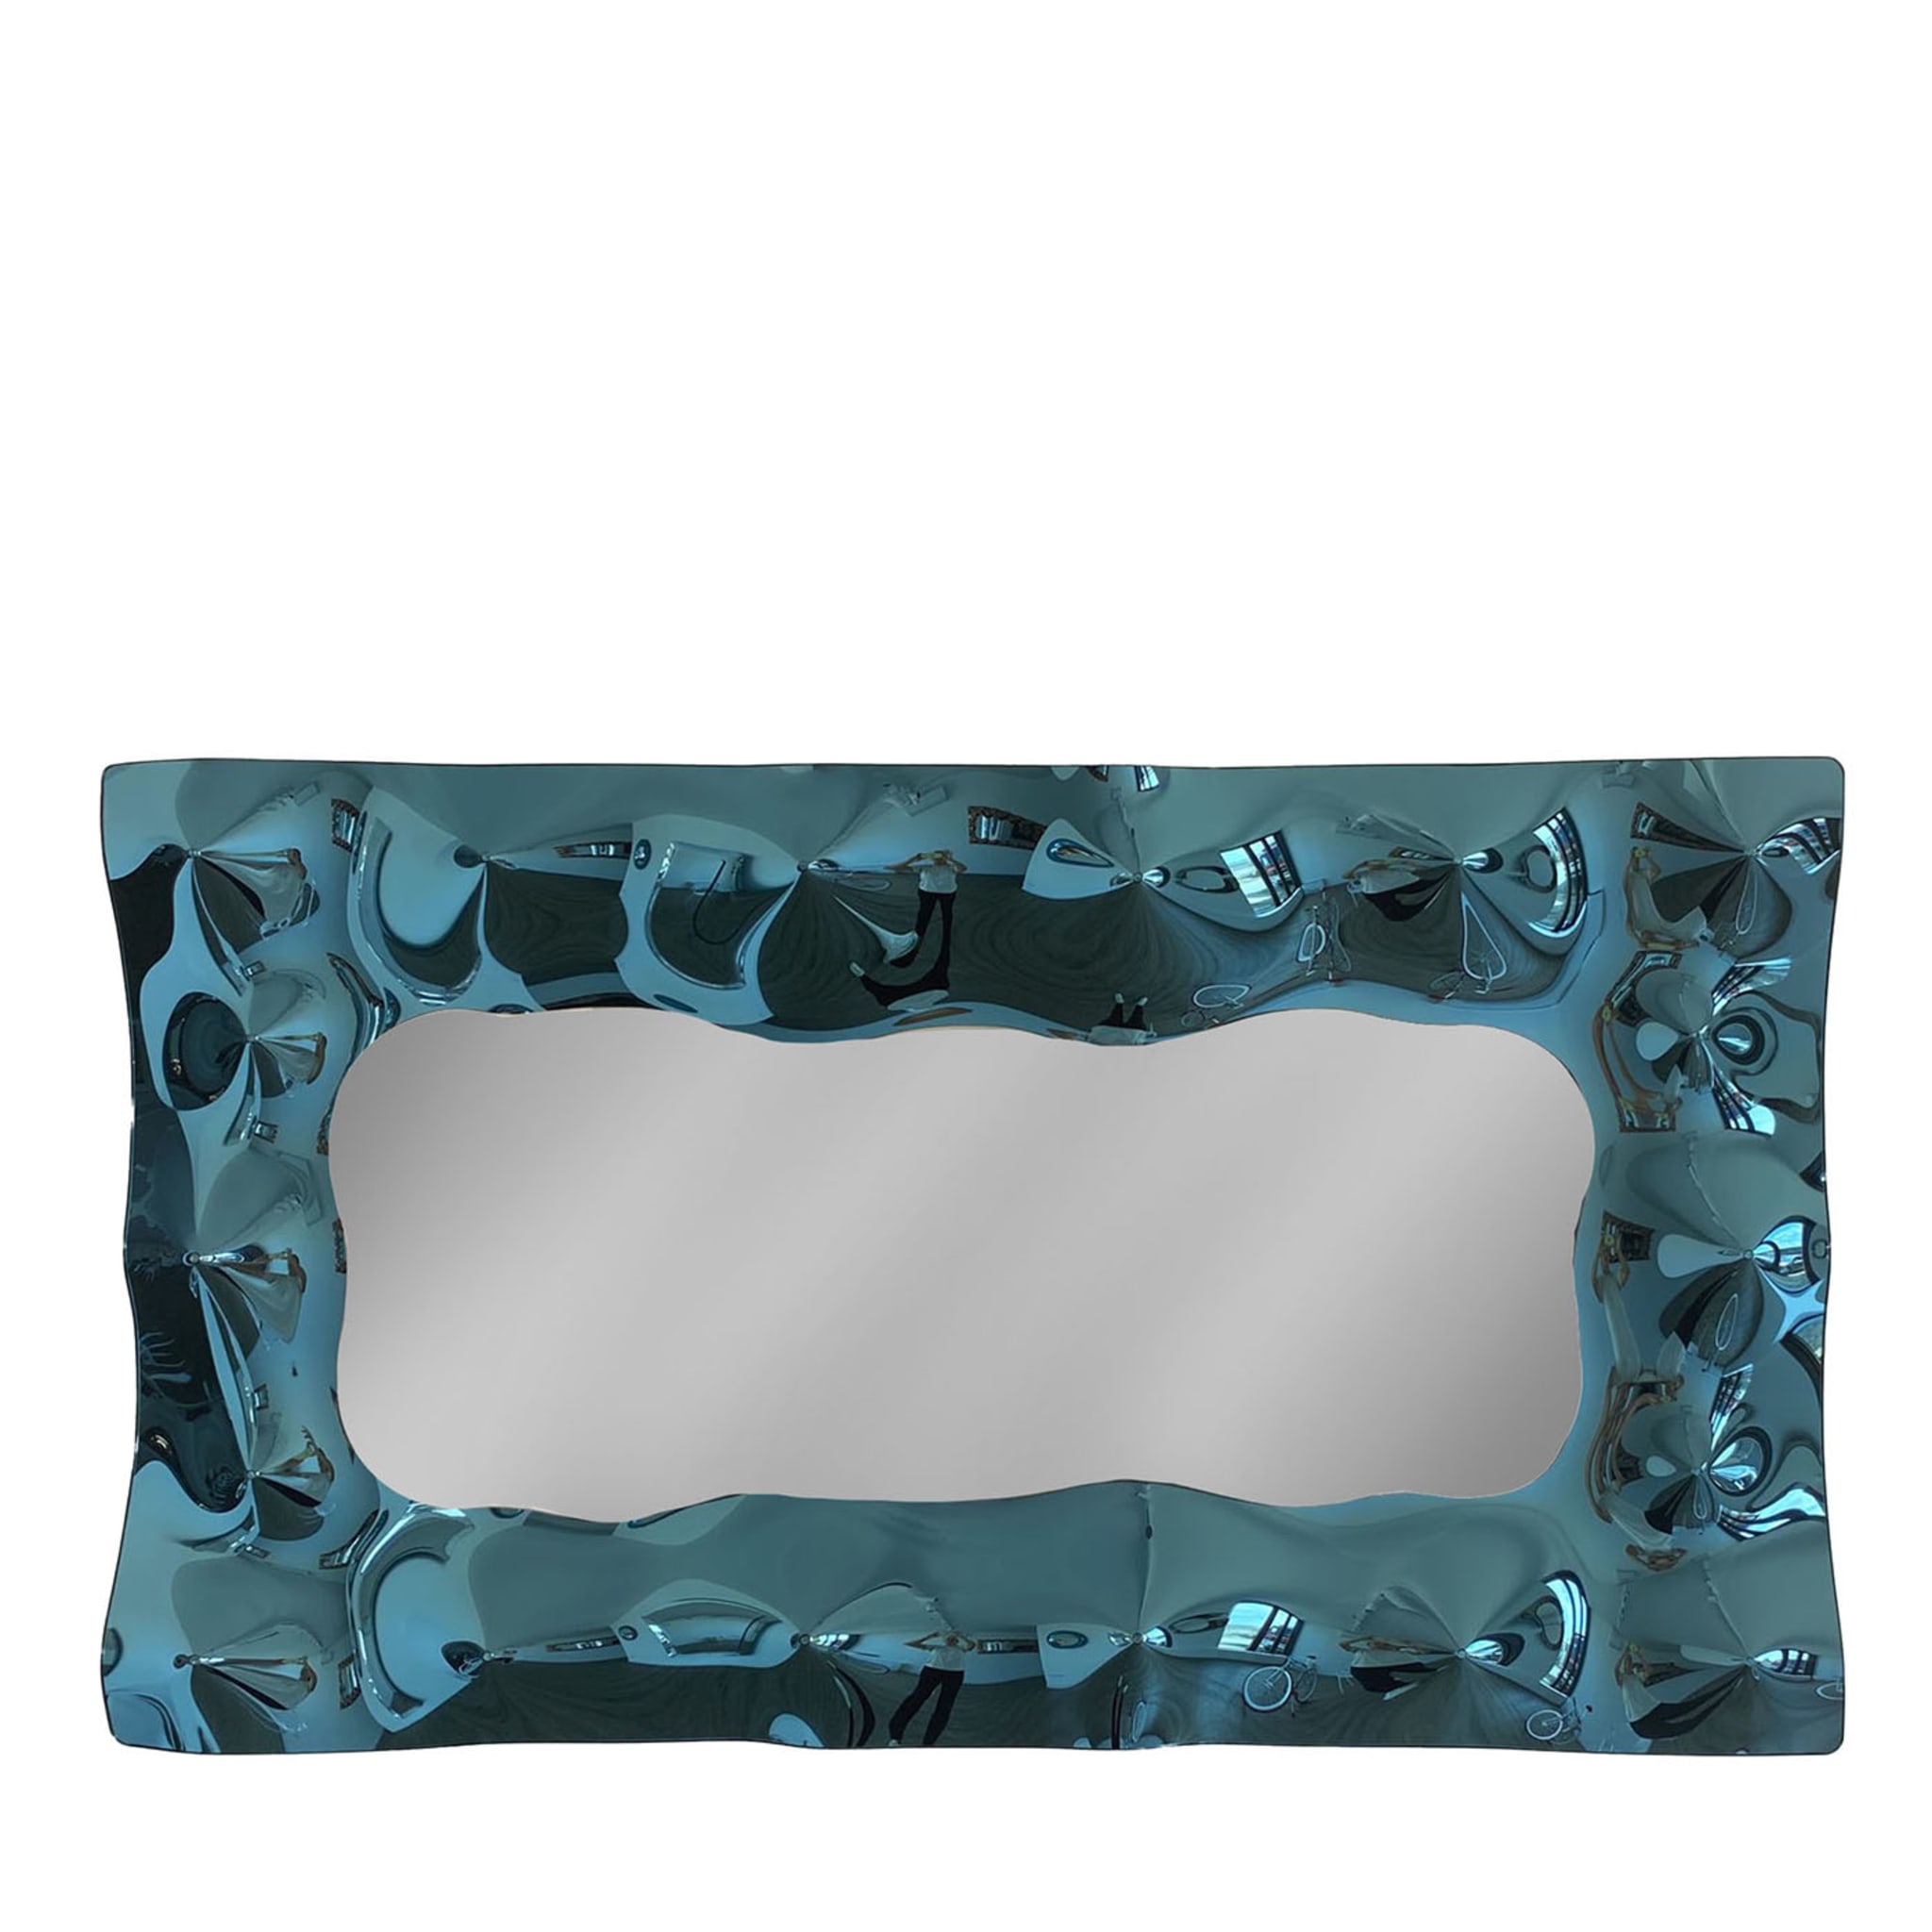 Stelvio Blue Mirror - Main view